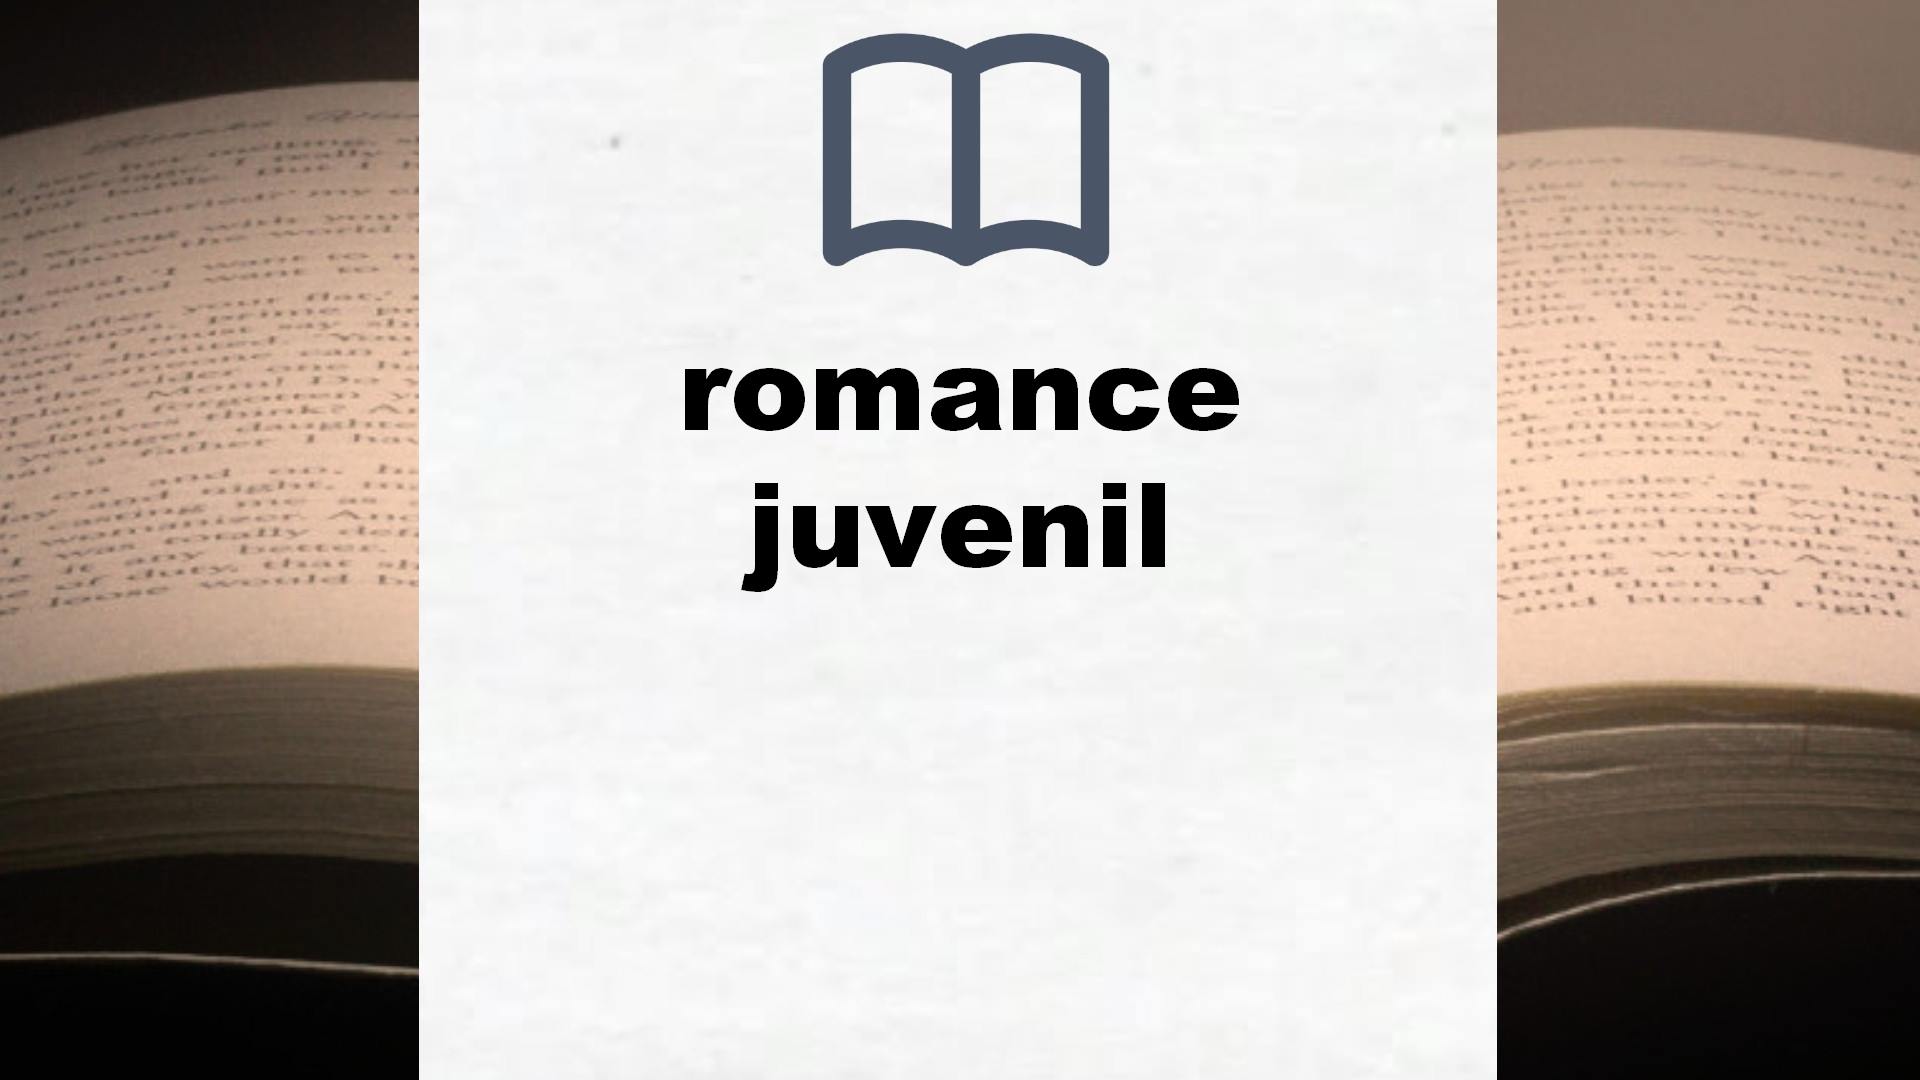 Libros sobre romance juvenil